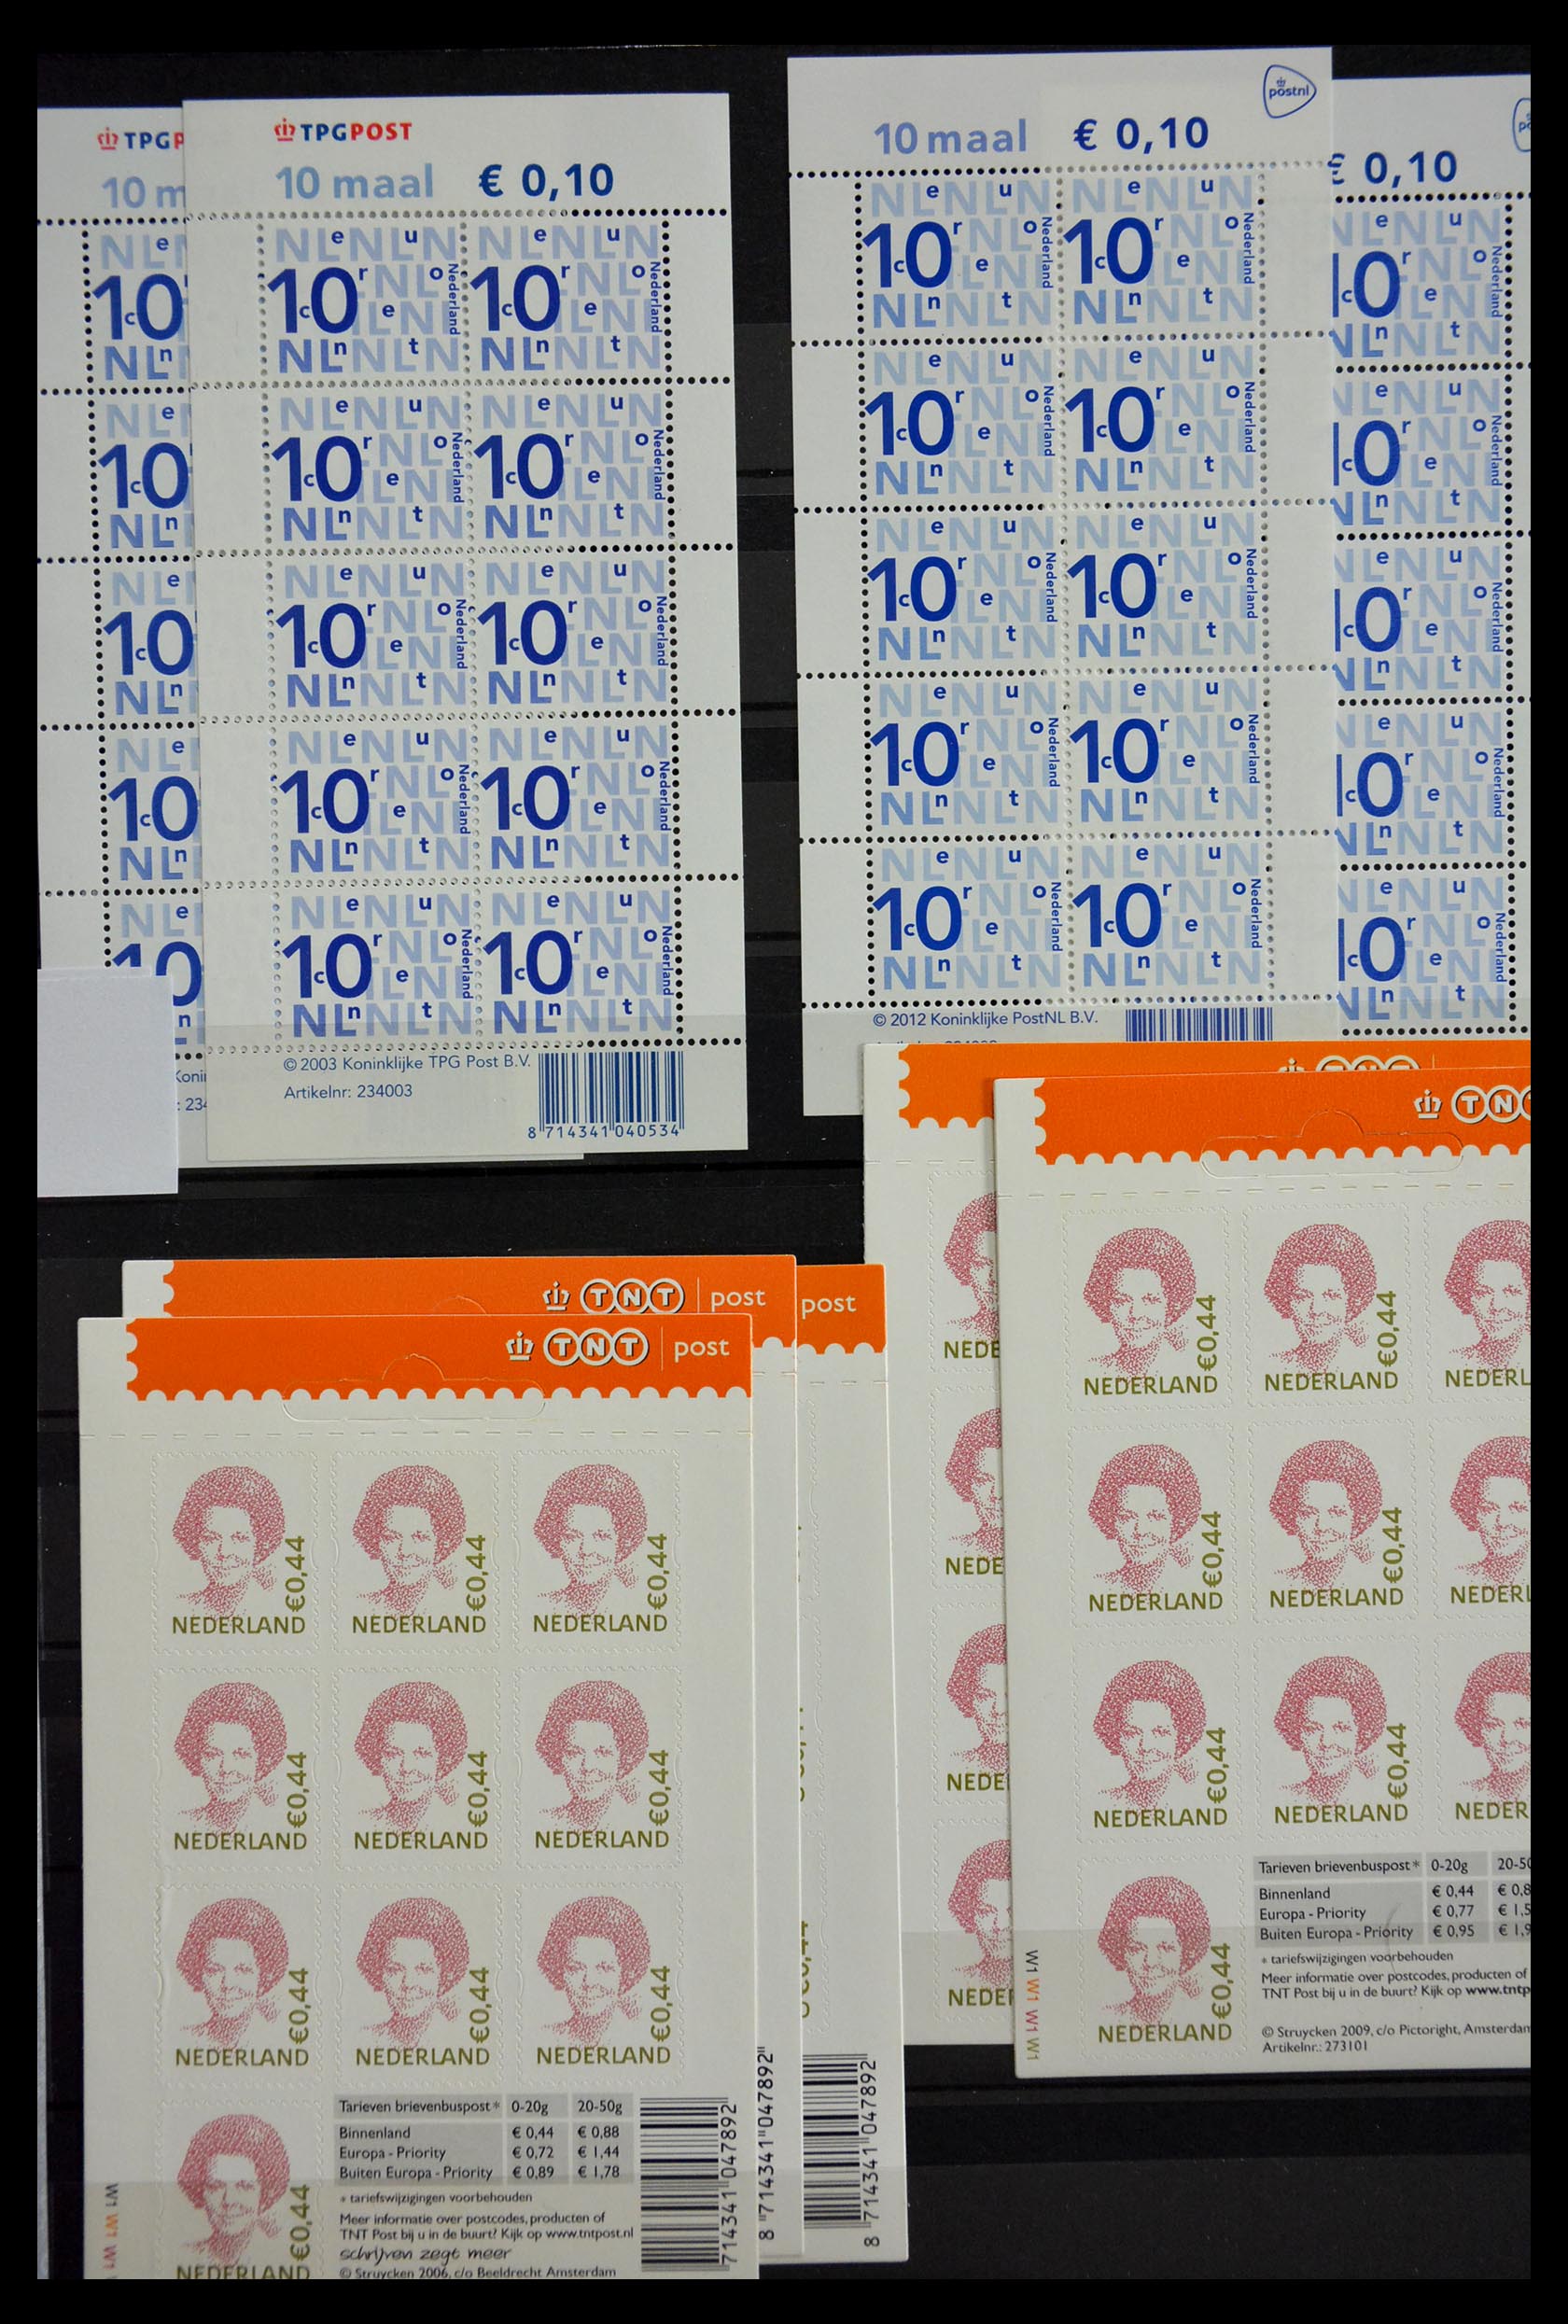 29387 045 - 29387 Netherlands stamp booklets 1964-2014.